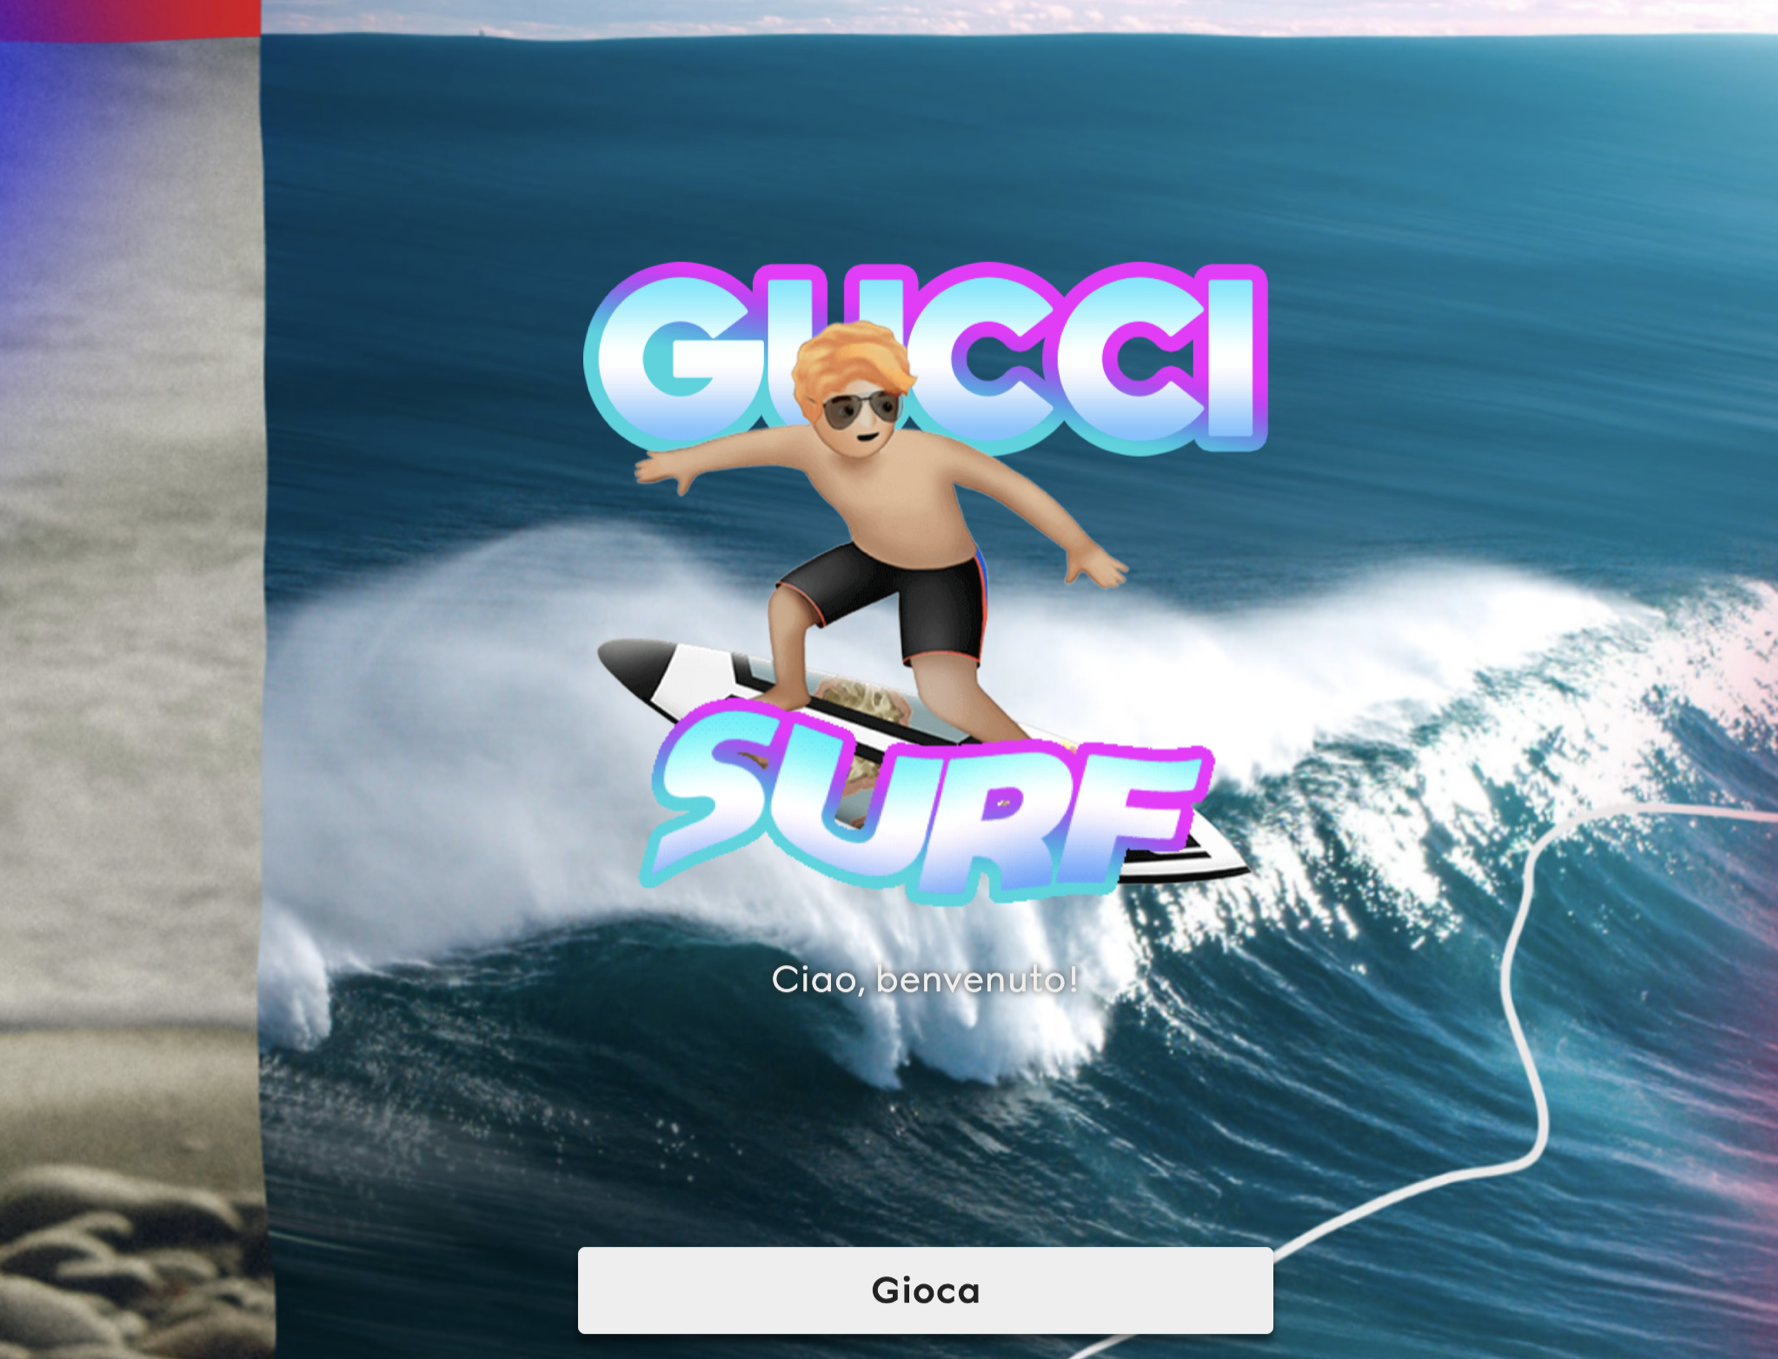 Мобильная игра Gucci поможет очистить океан от пластика